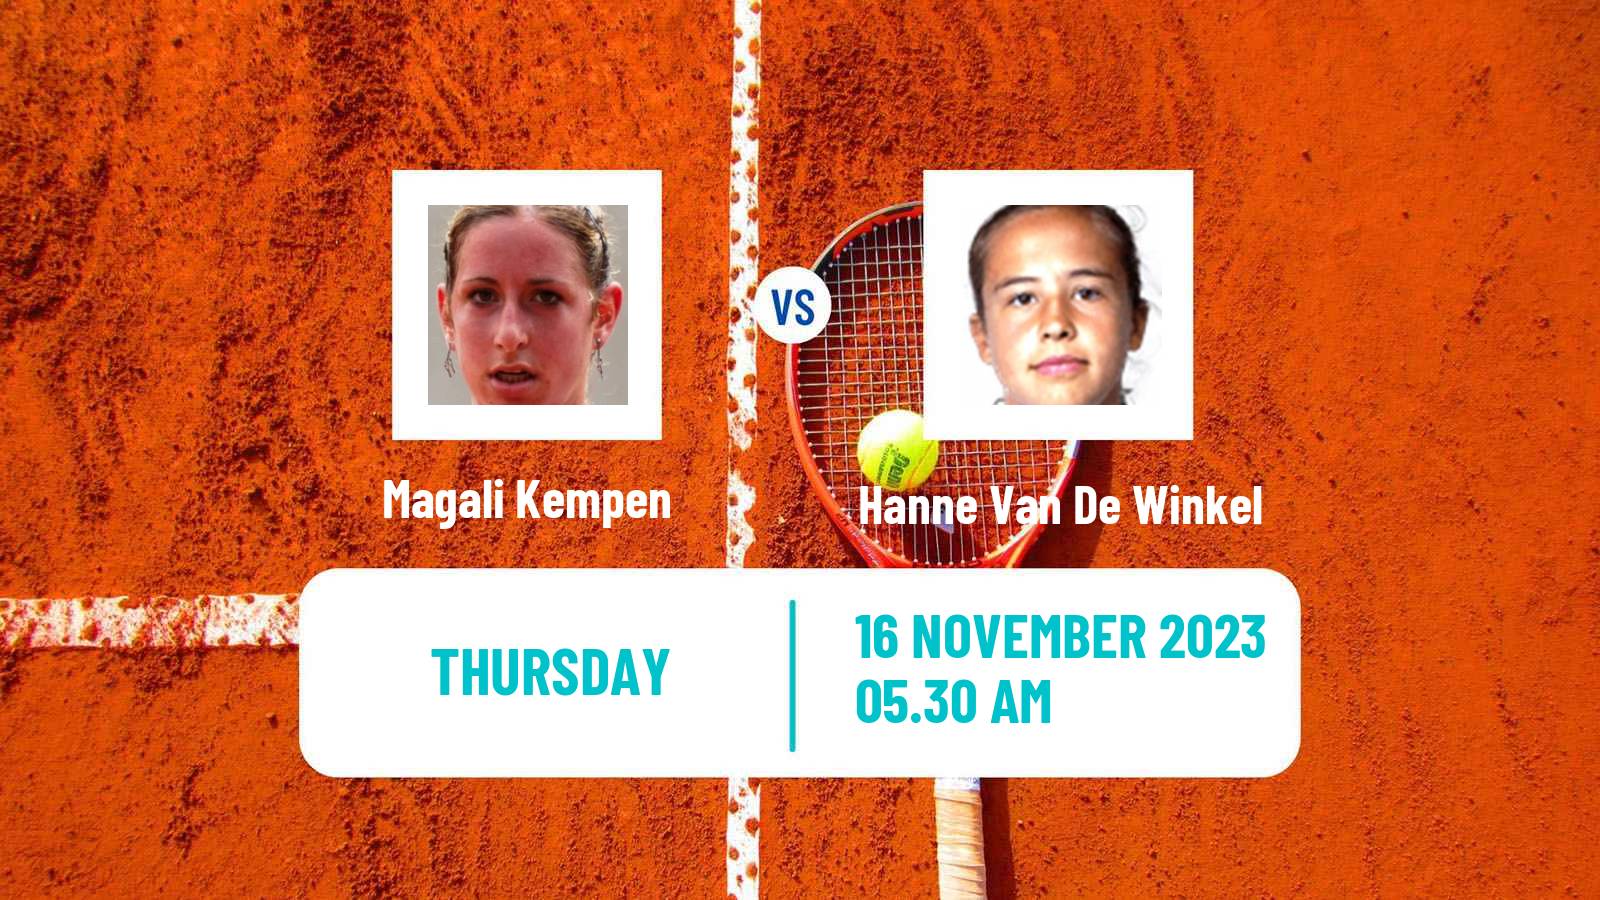 Tennis ITF W40 Petange Women Magali Kempen - Hanne Van De Winkel